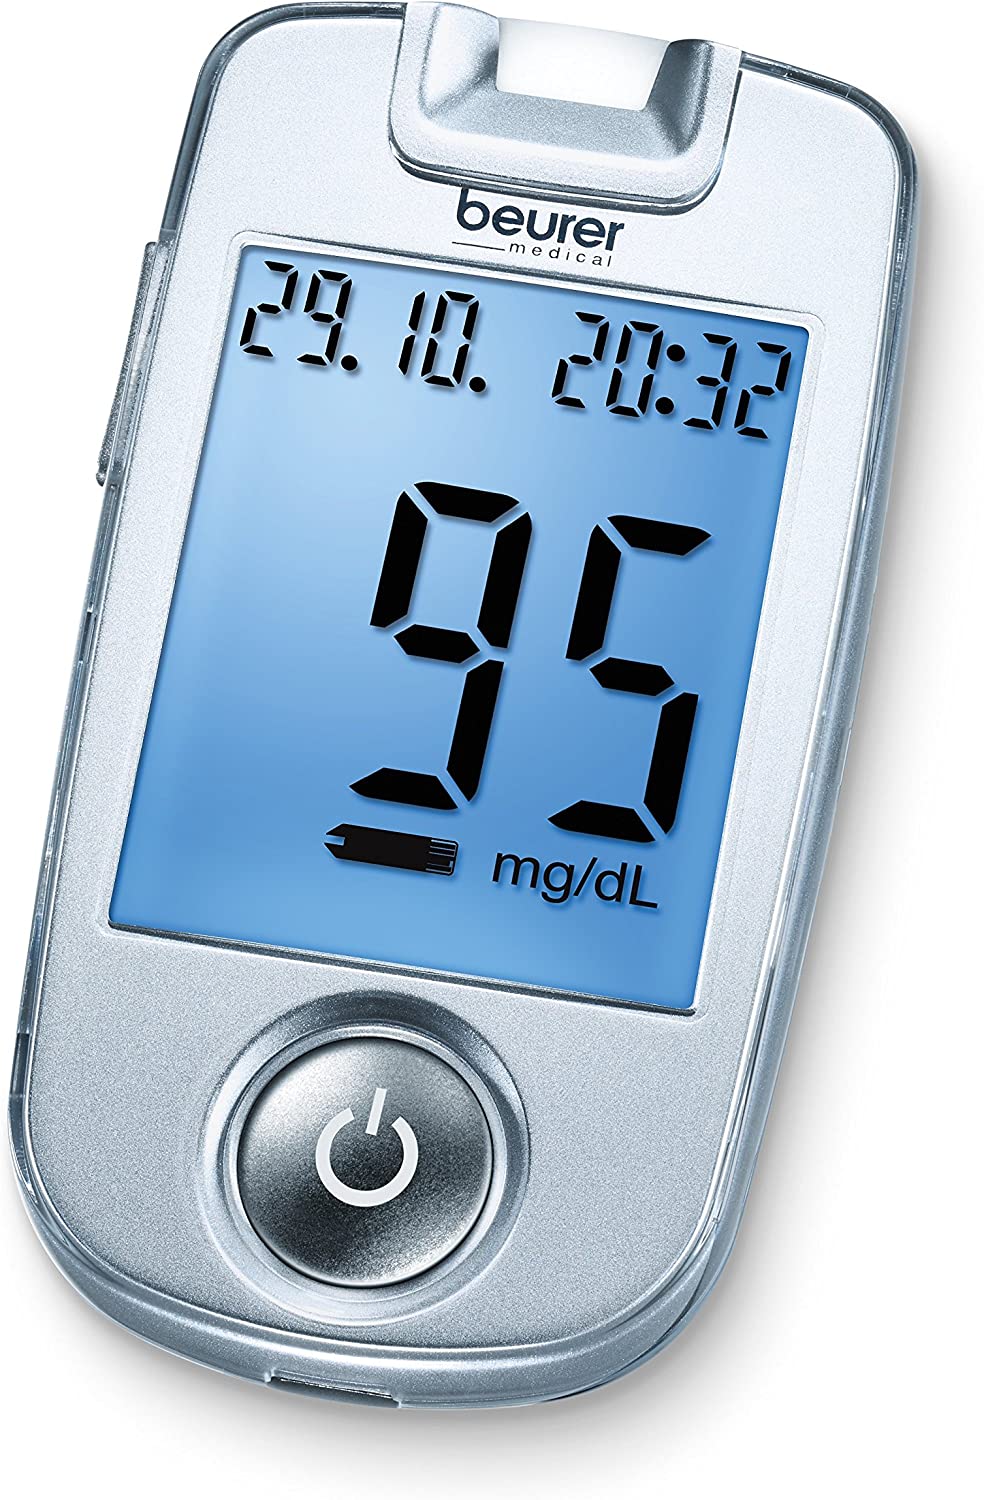 Beurer GL 40 mg/dL blood glucose monitor.